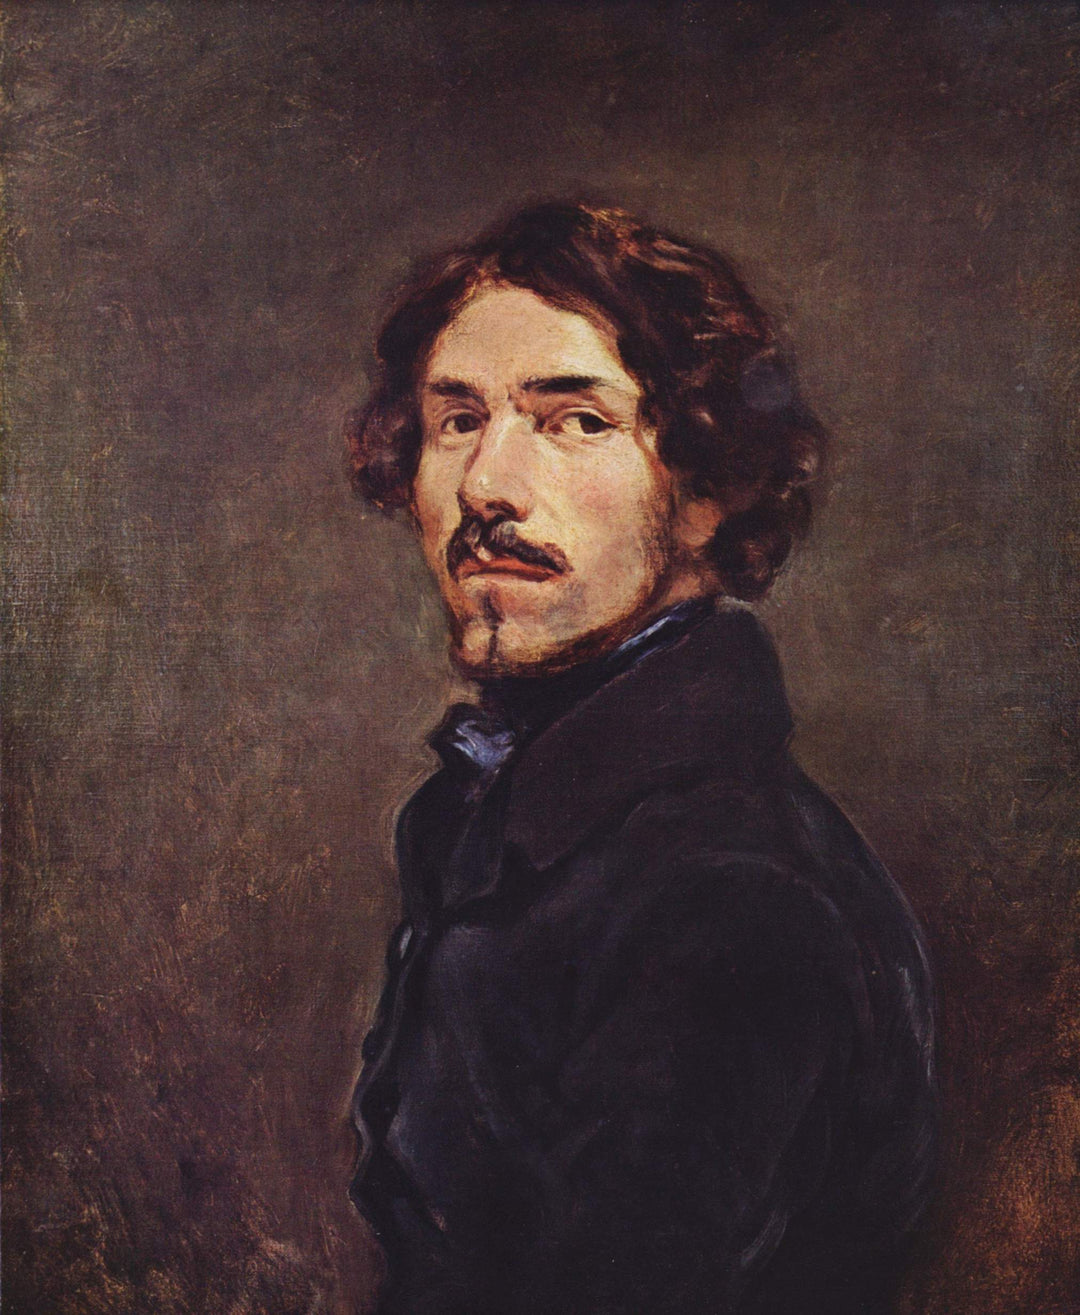 Self Portrait by Eugène Delacroix Reproduction Painting by Blue Surf Art